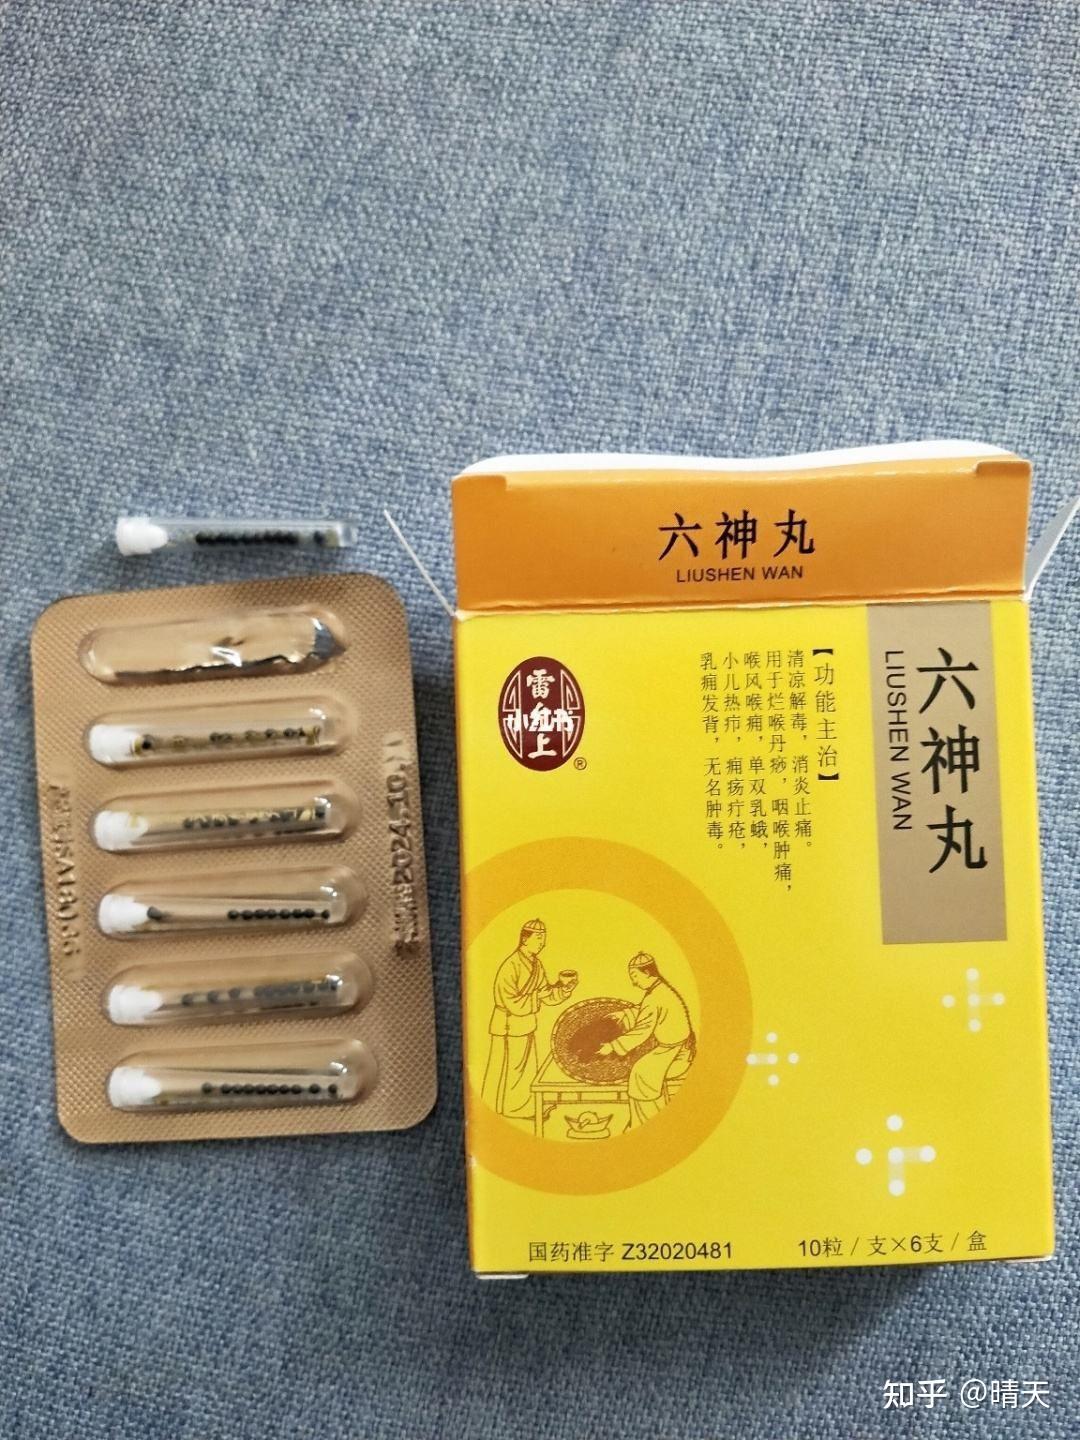 上海 雷氏 六神丸 Liu Shen Wan for Sore Throat Tonsillitis Sore Throat Furuncle ...